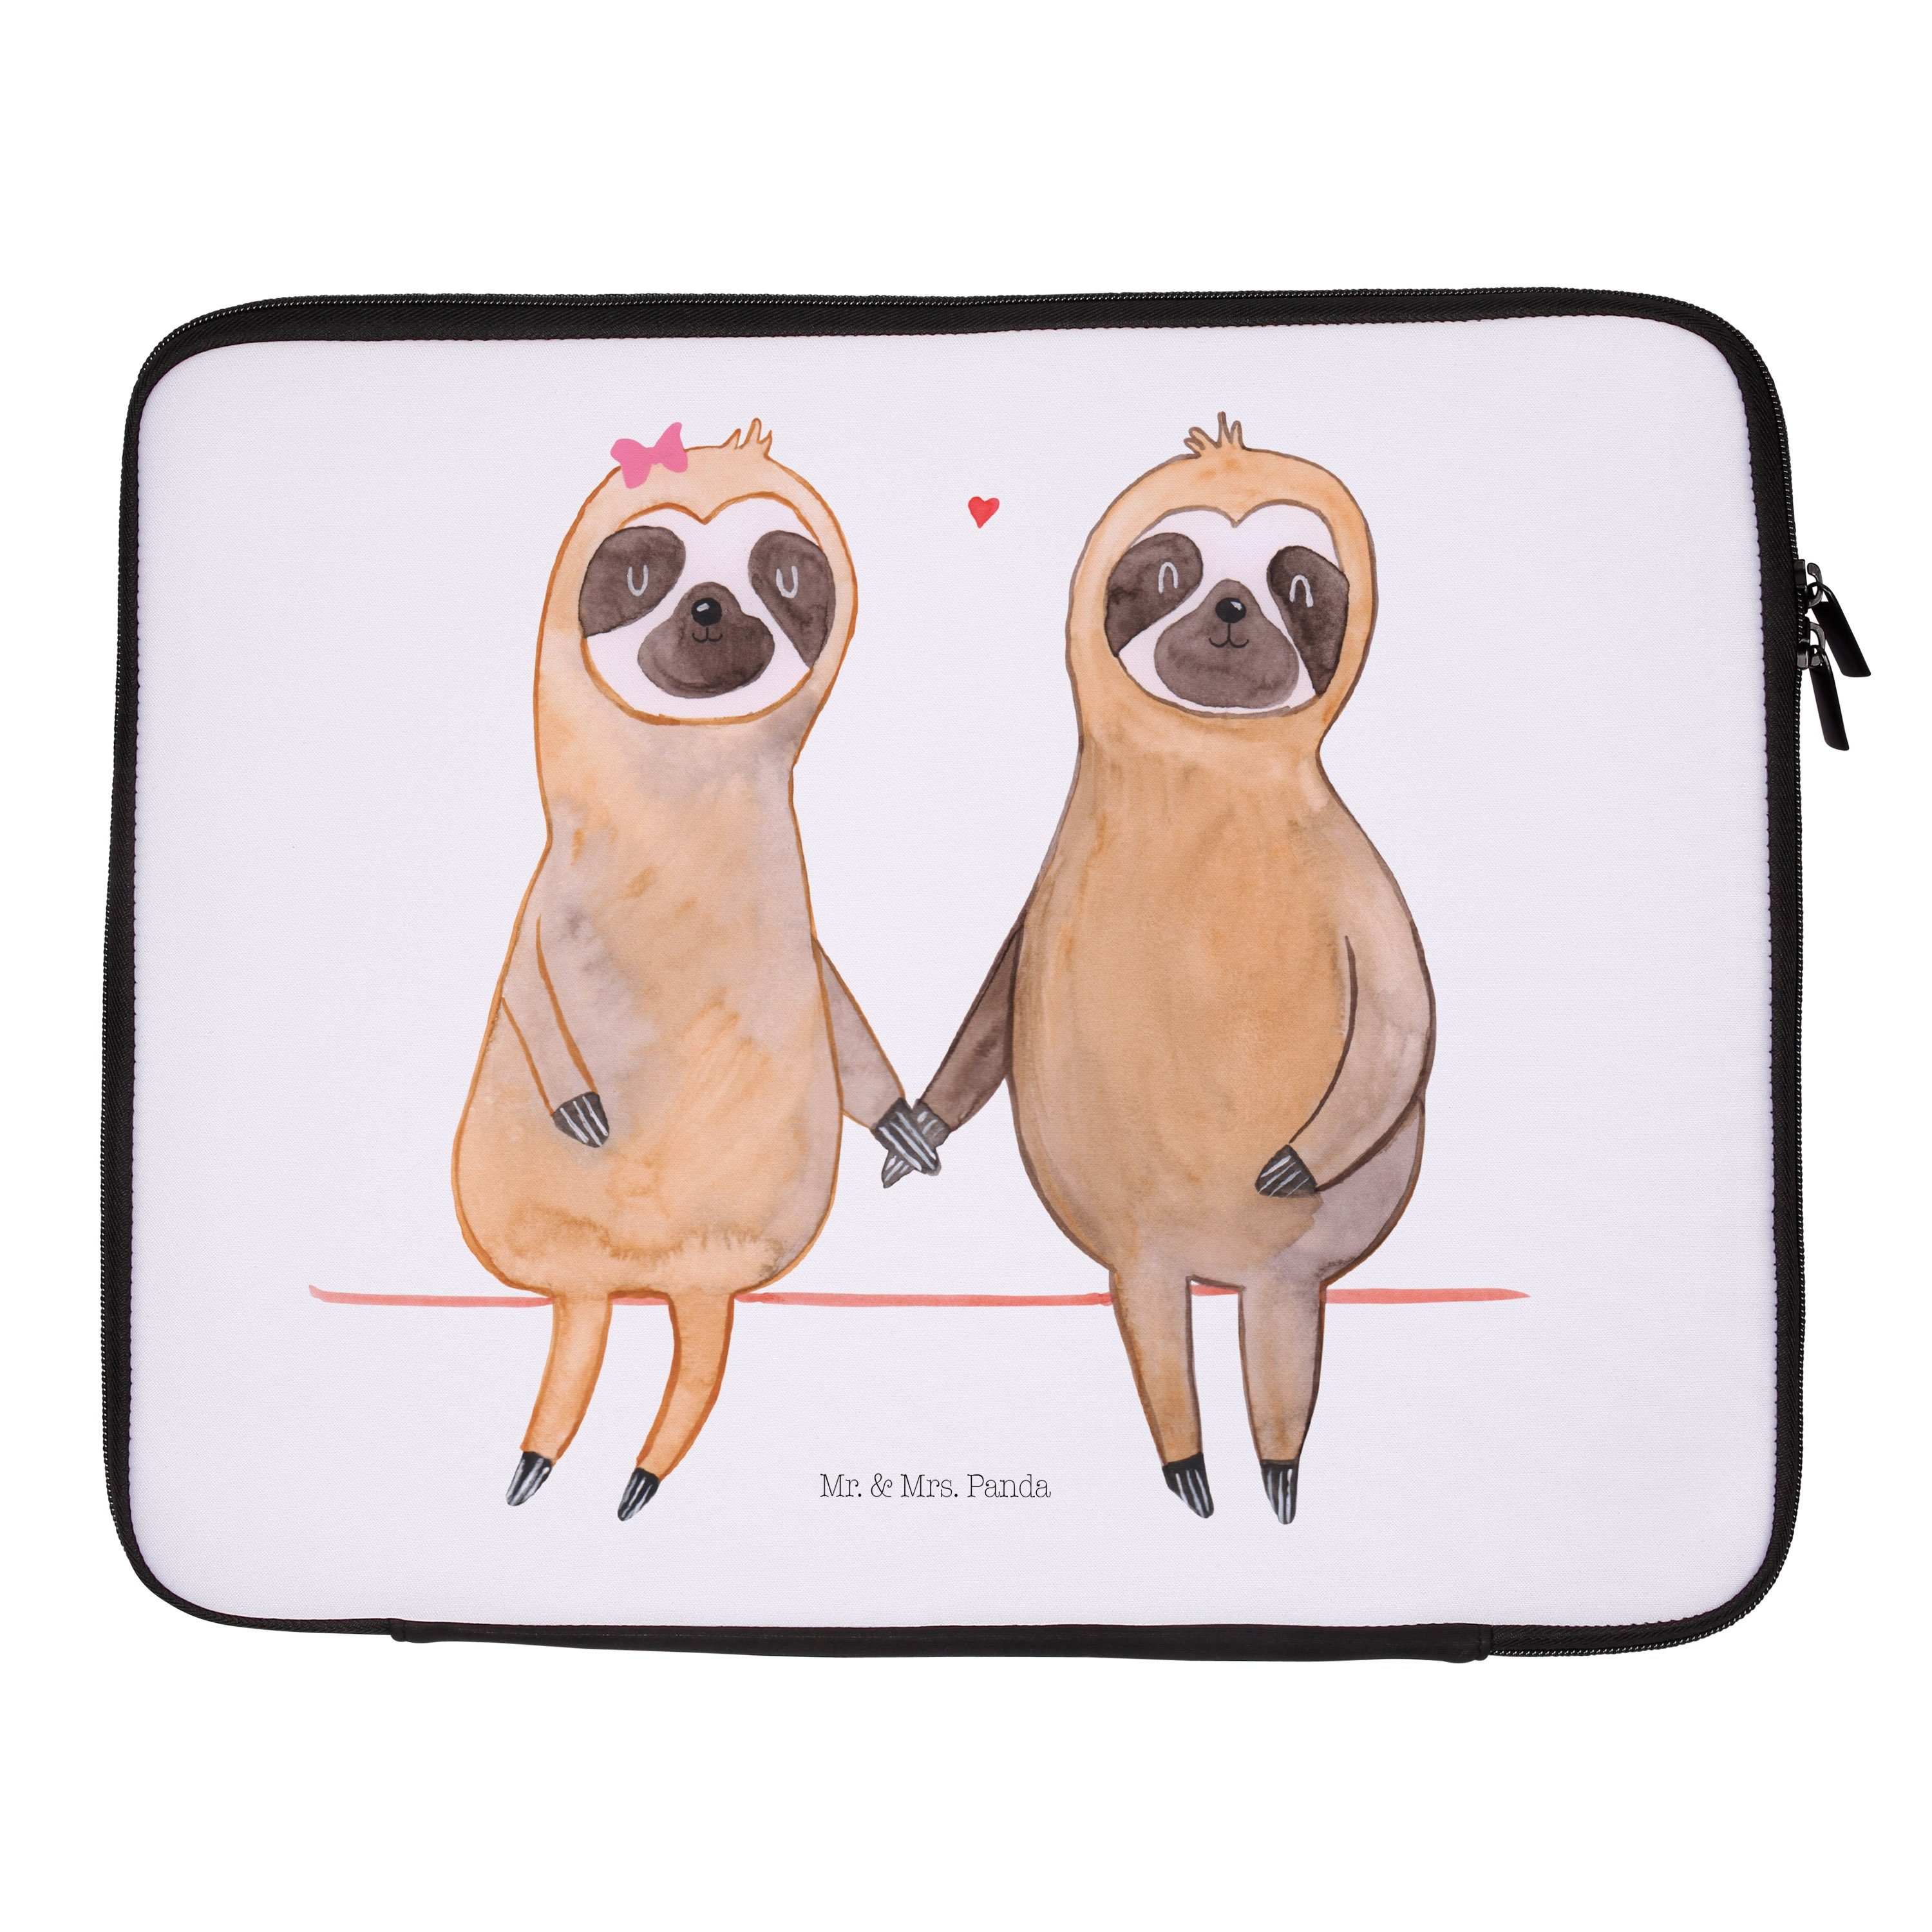 Mr. & Mrs. Panda Laptop-Hülle 27 x 36 cm Faultier Pärchen - Weiß - Geschenk, Notebook Schutz, Langs, Strapazierfähig